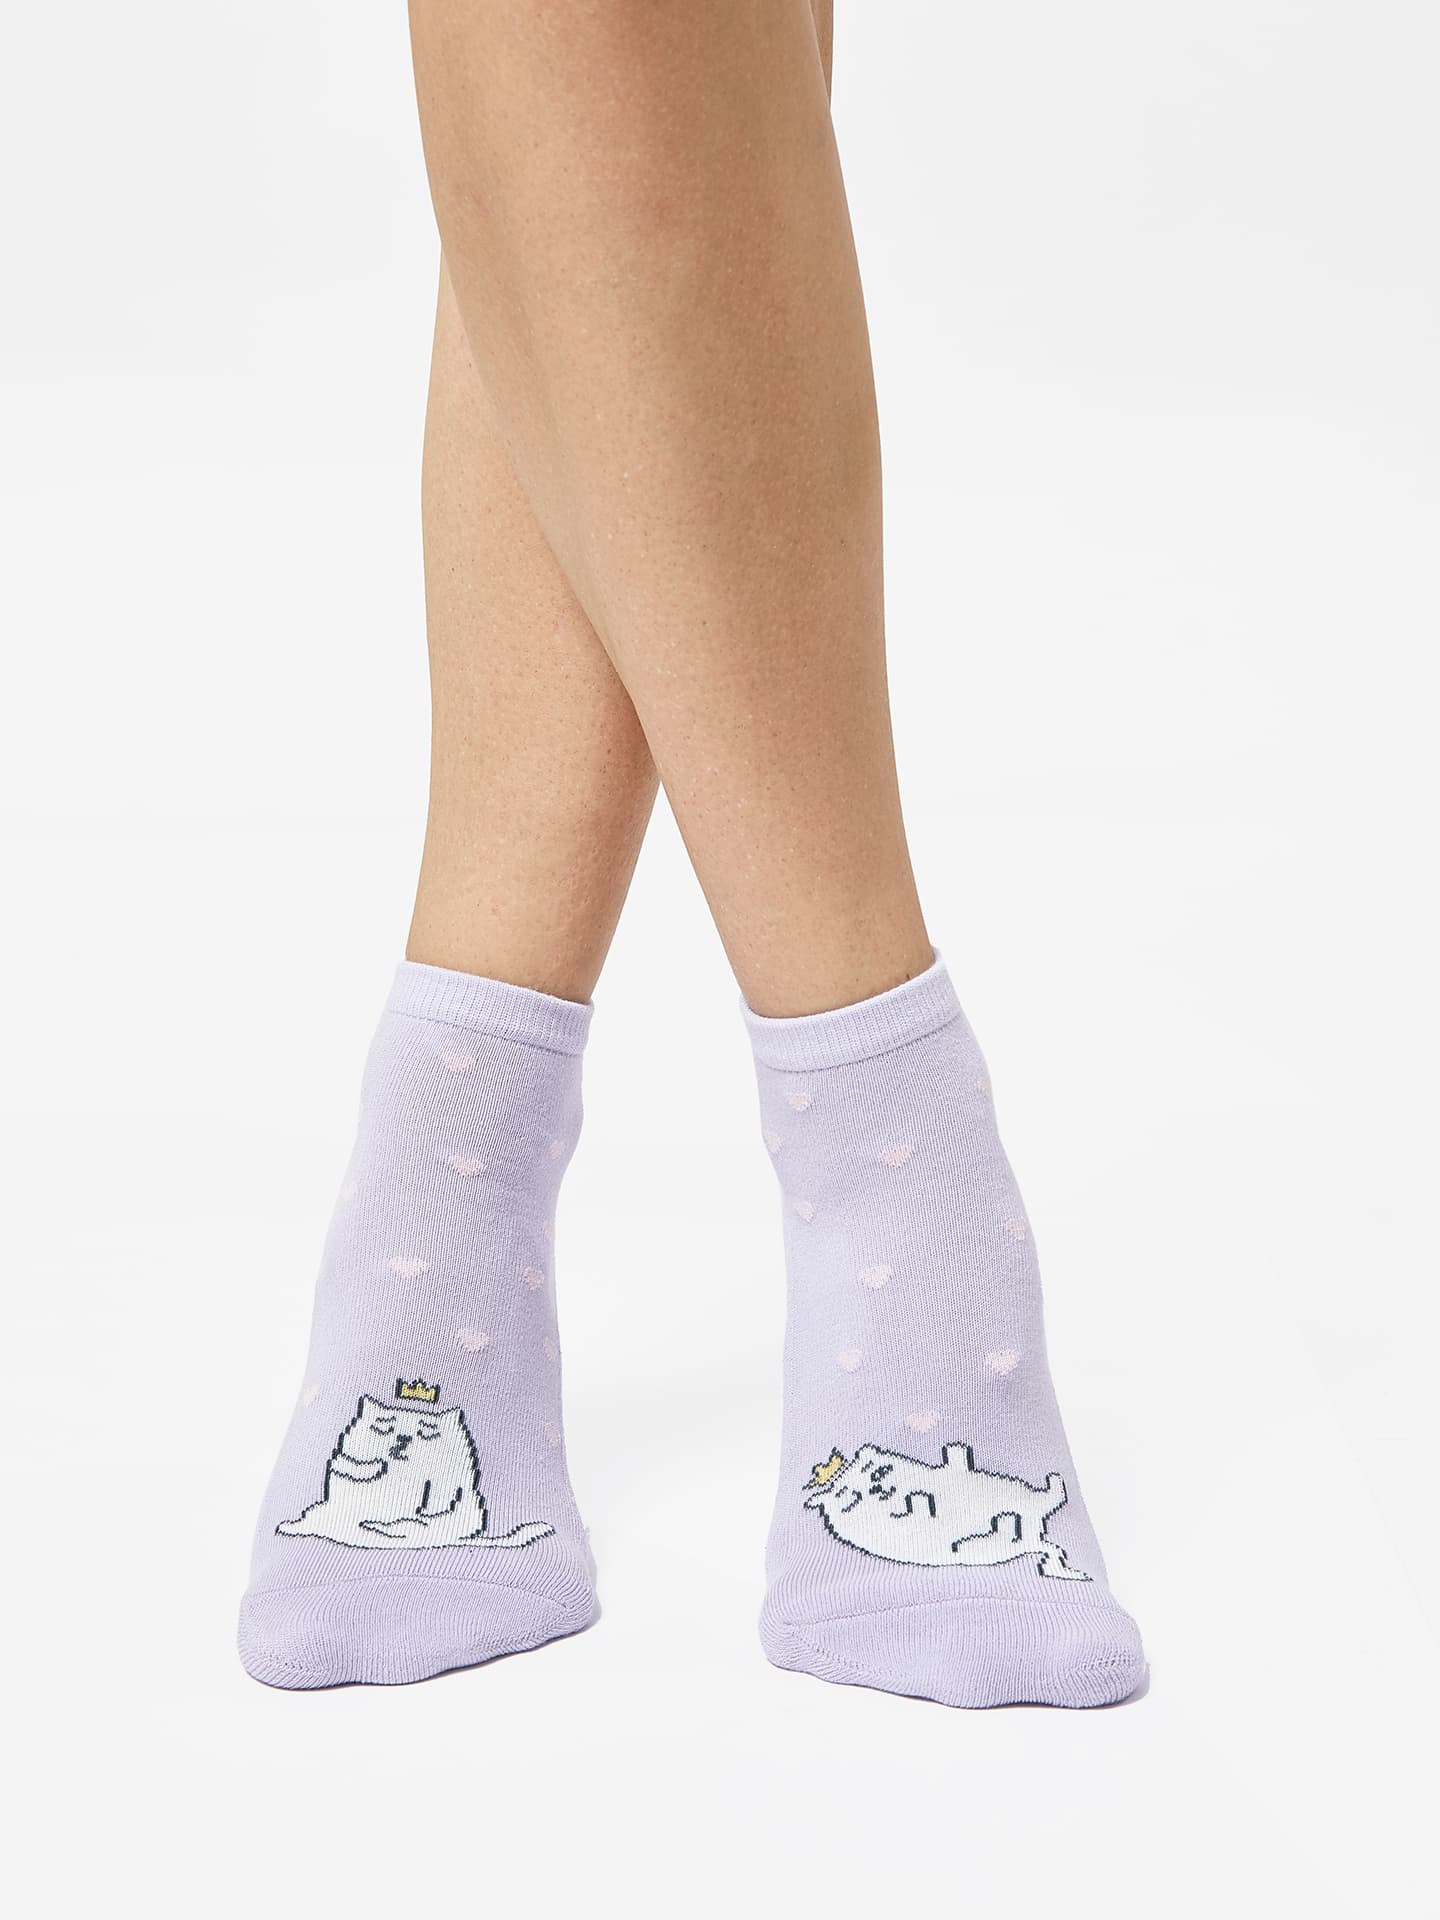 Высокие женские носки с плюшевым следом светло-лавандового цвета